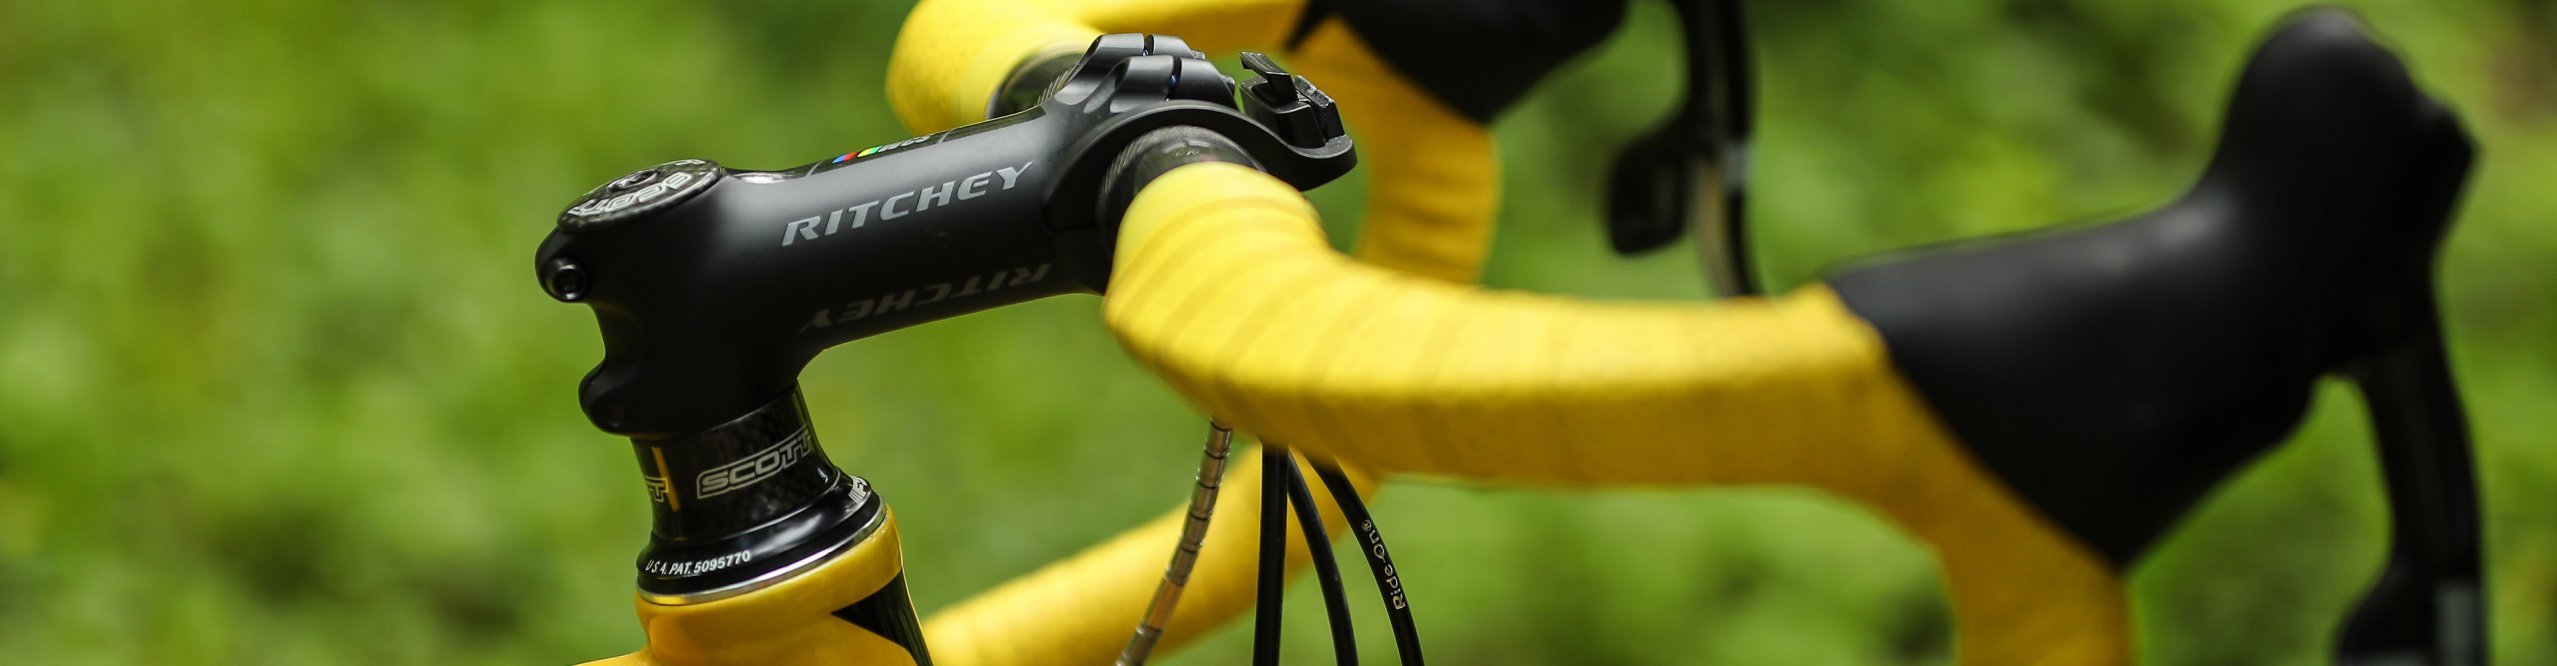 Ritchey Fahrradteile schwarzer Vorbau am Rad montiert mit Rennlenker und leuchtend gelbem Lenkerband